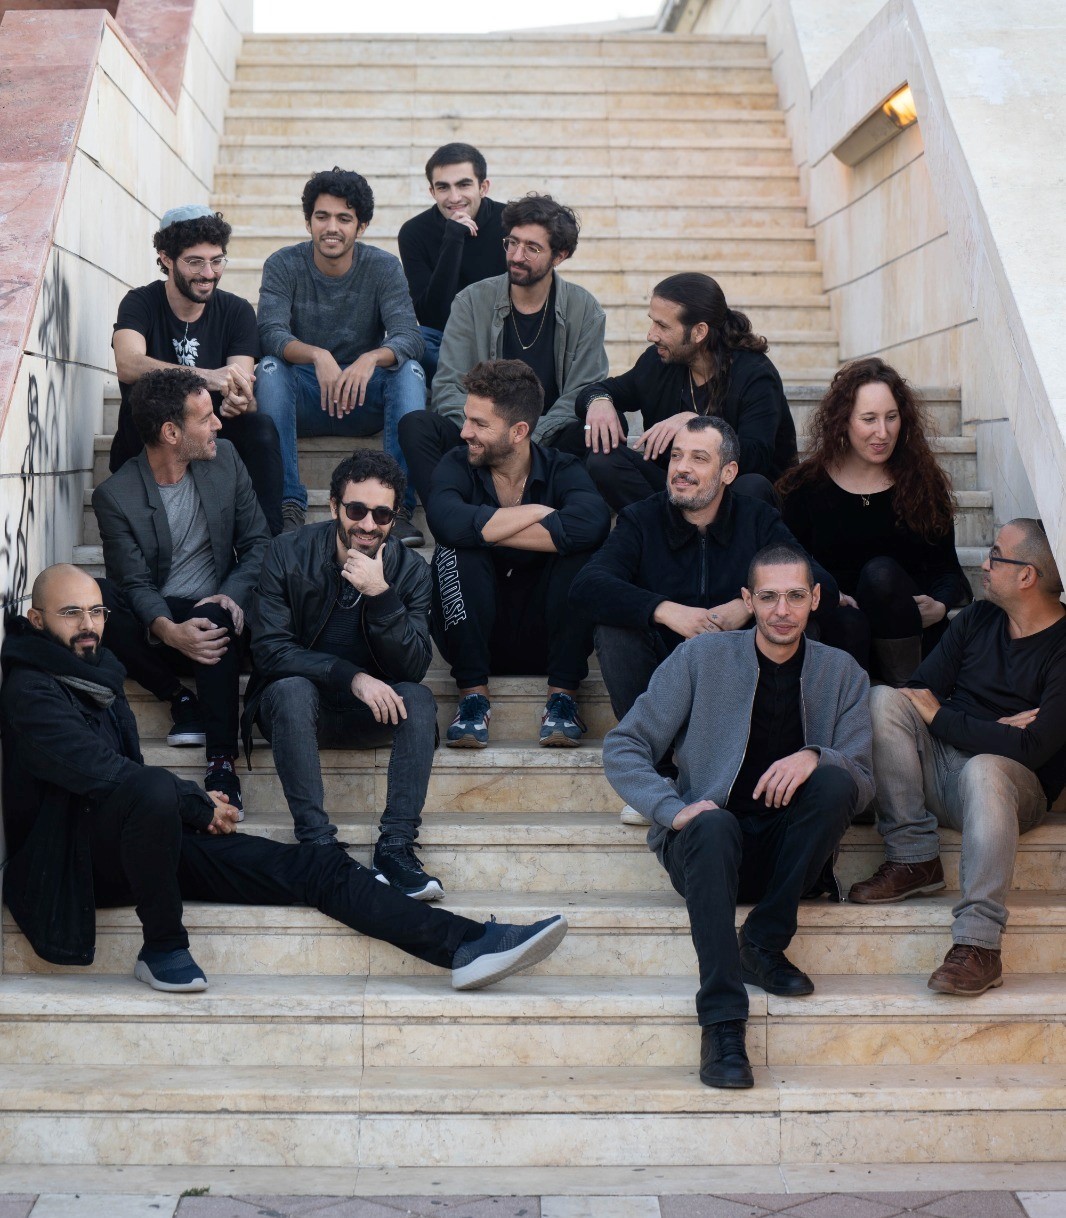 התזמורת האנדלוסית הישראלית אשדוד פותחת עונה חדשה ומציינת 30 שנה להיווסדה